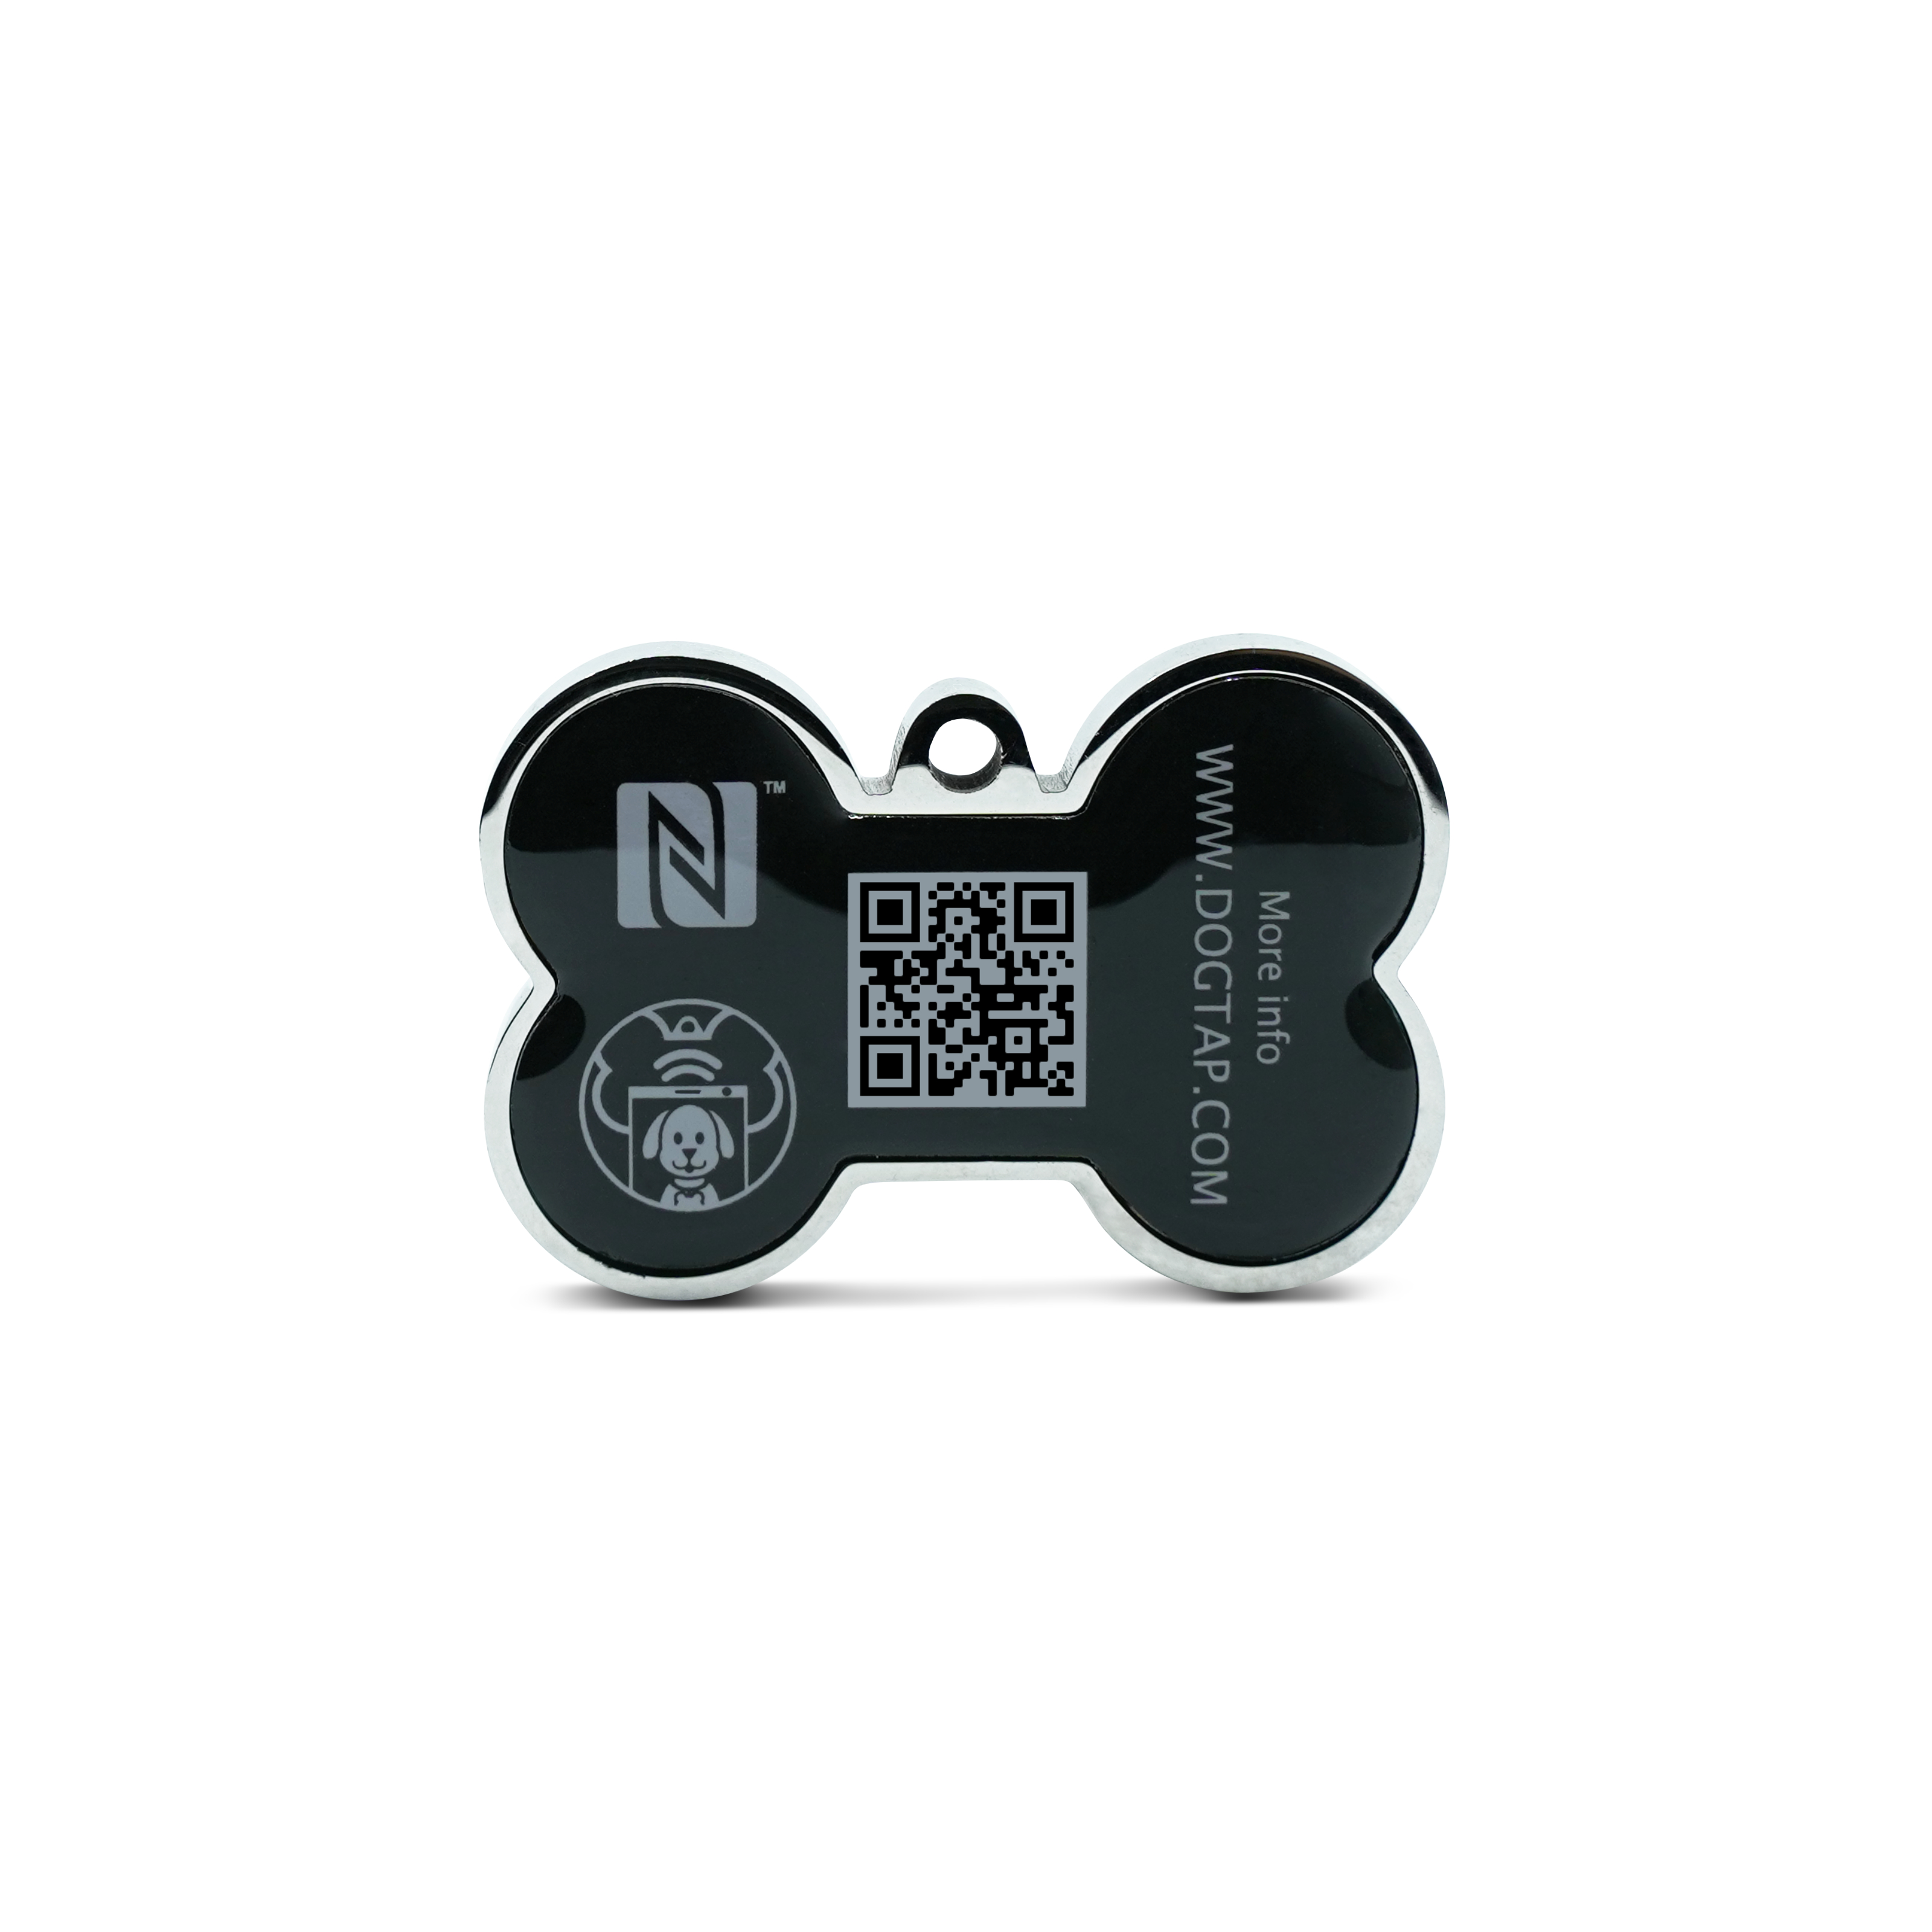 Dogtap Solid - Digital dog tag - PVC / Metal - 41.6 x 28.5 x 4.6 mm - black